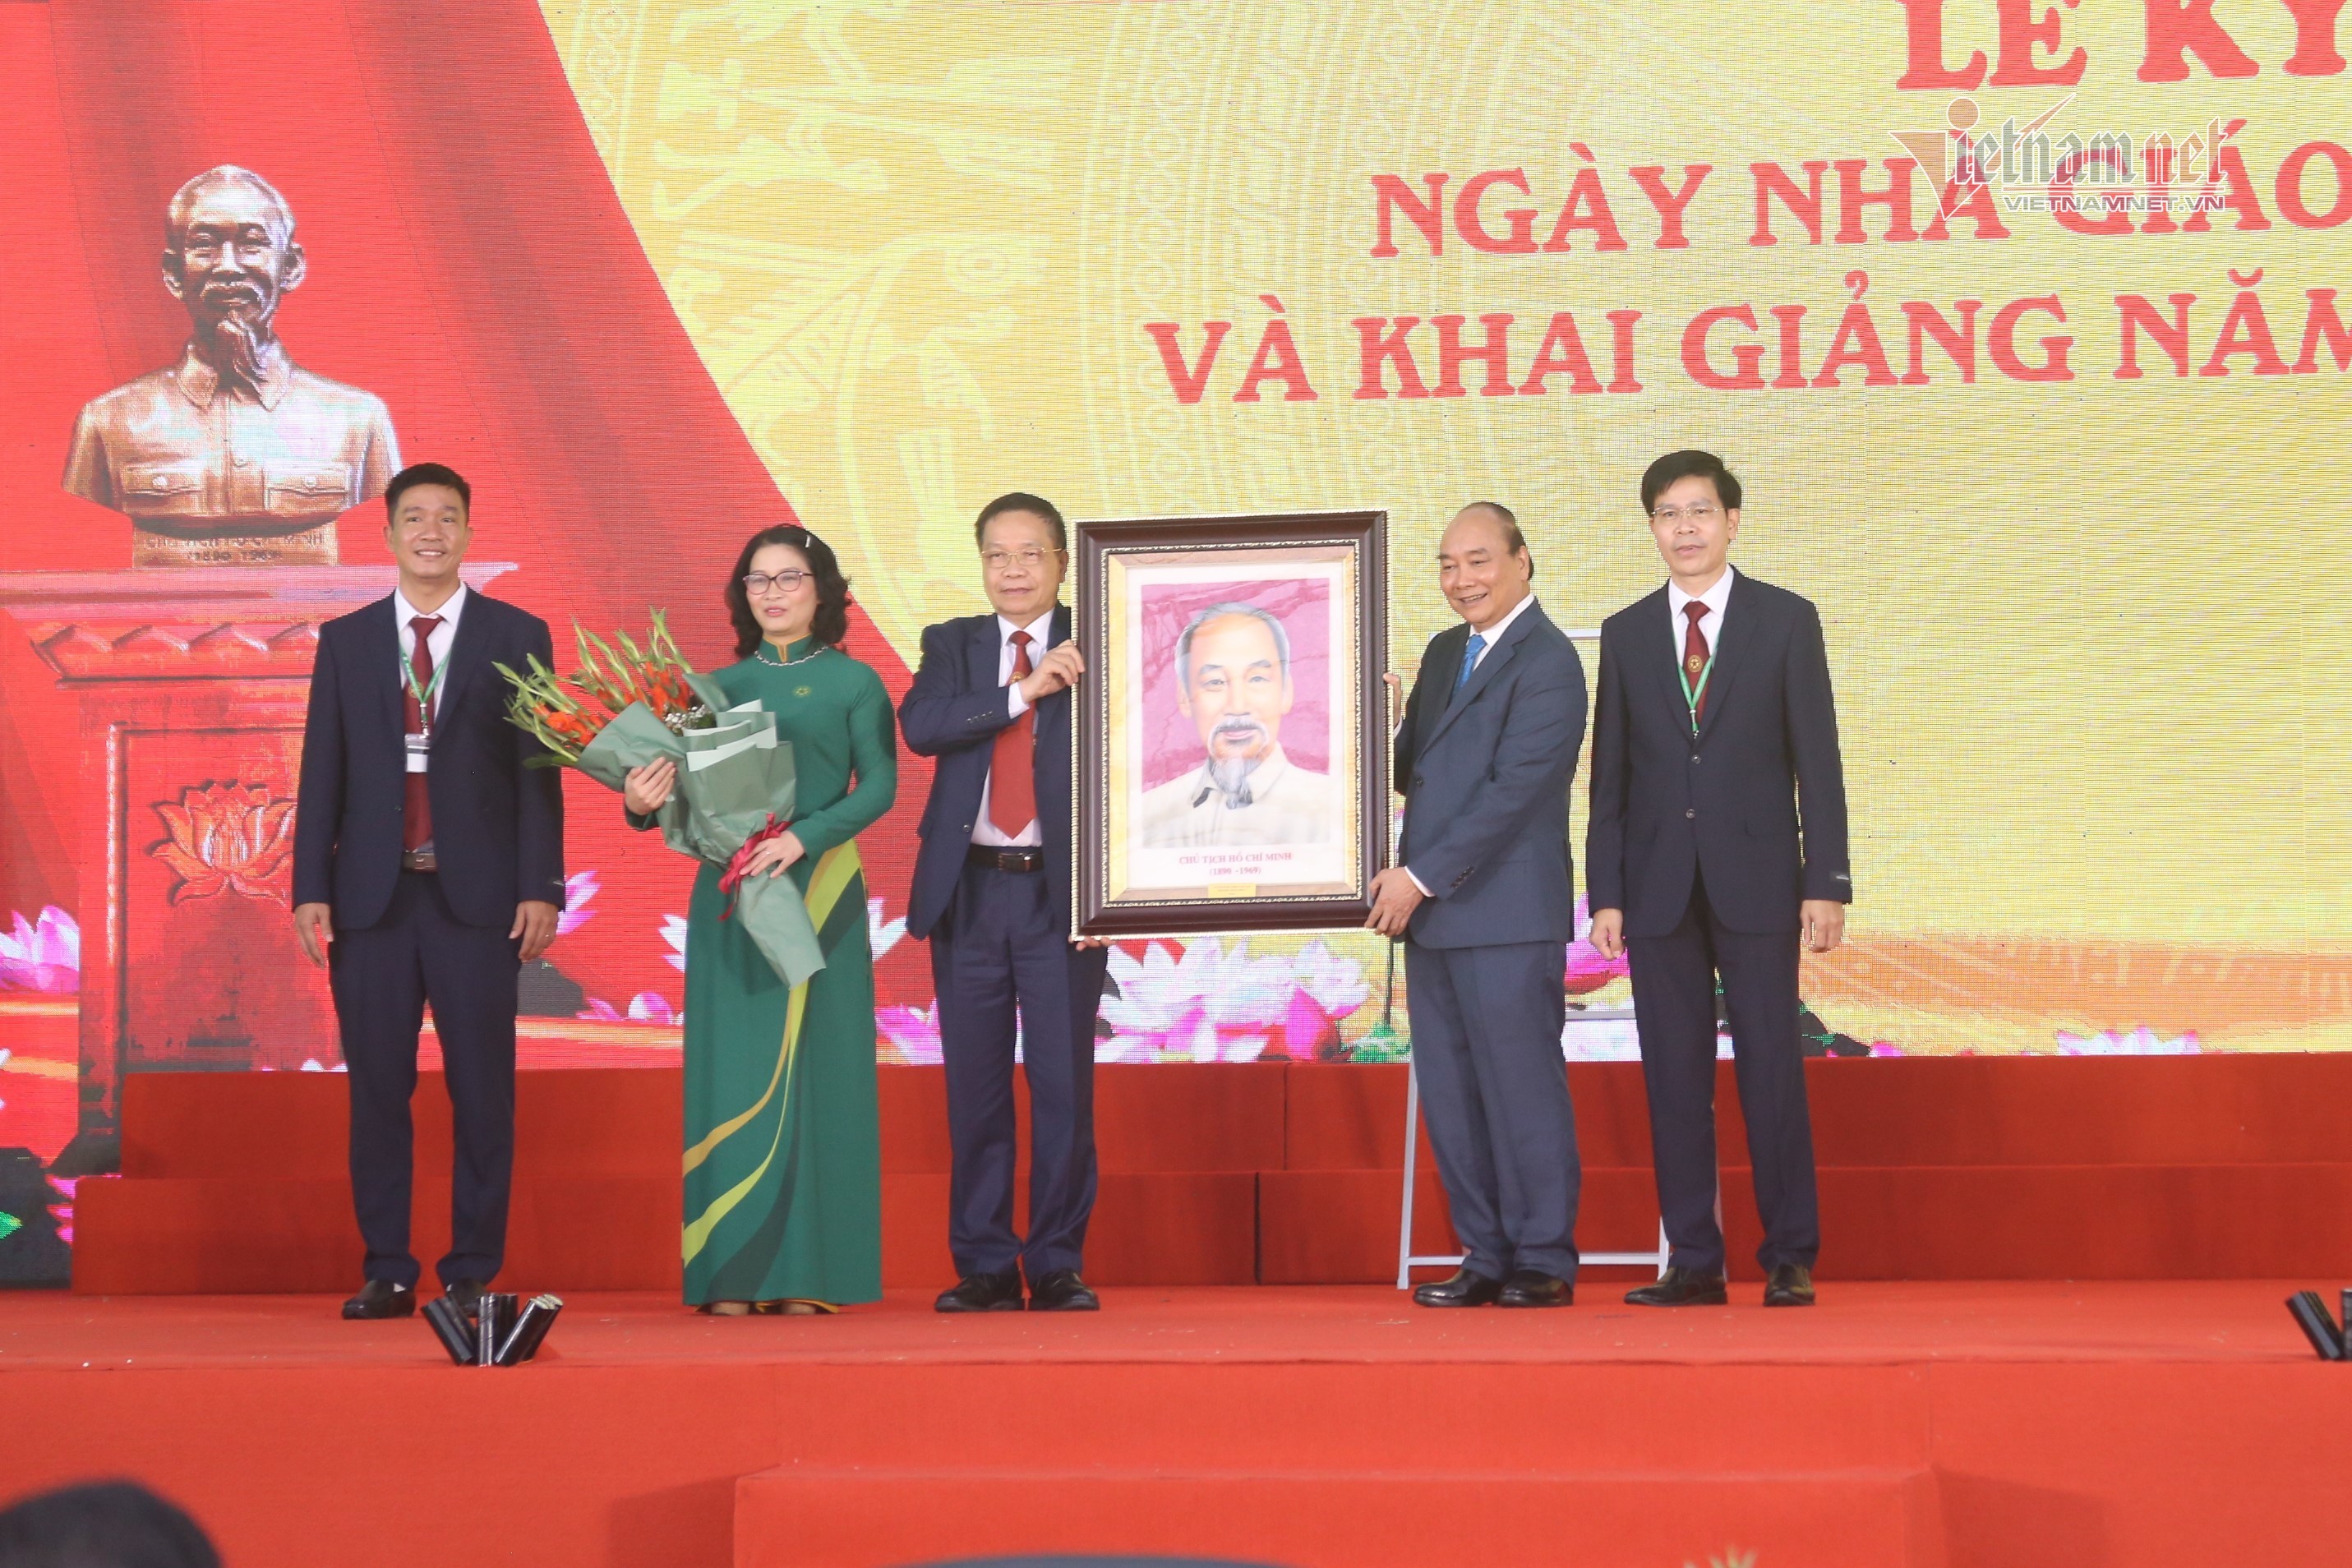 Chủ tịch nước dự khai giảng Học viện Nông nghiệp Việt Nam